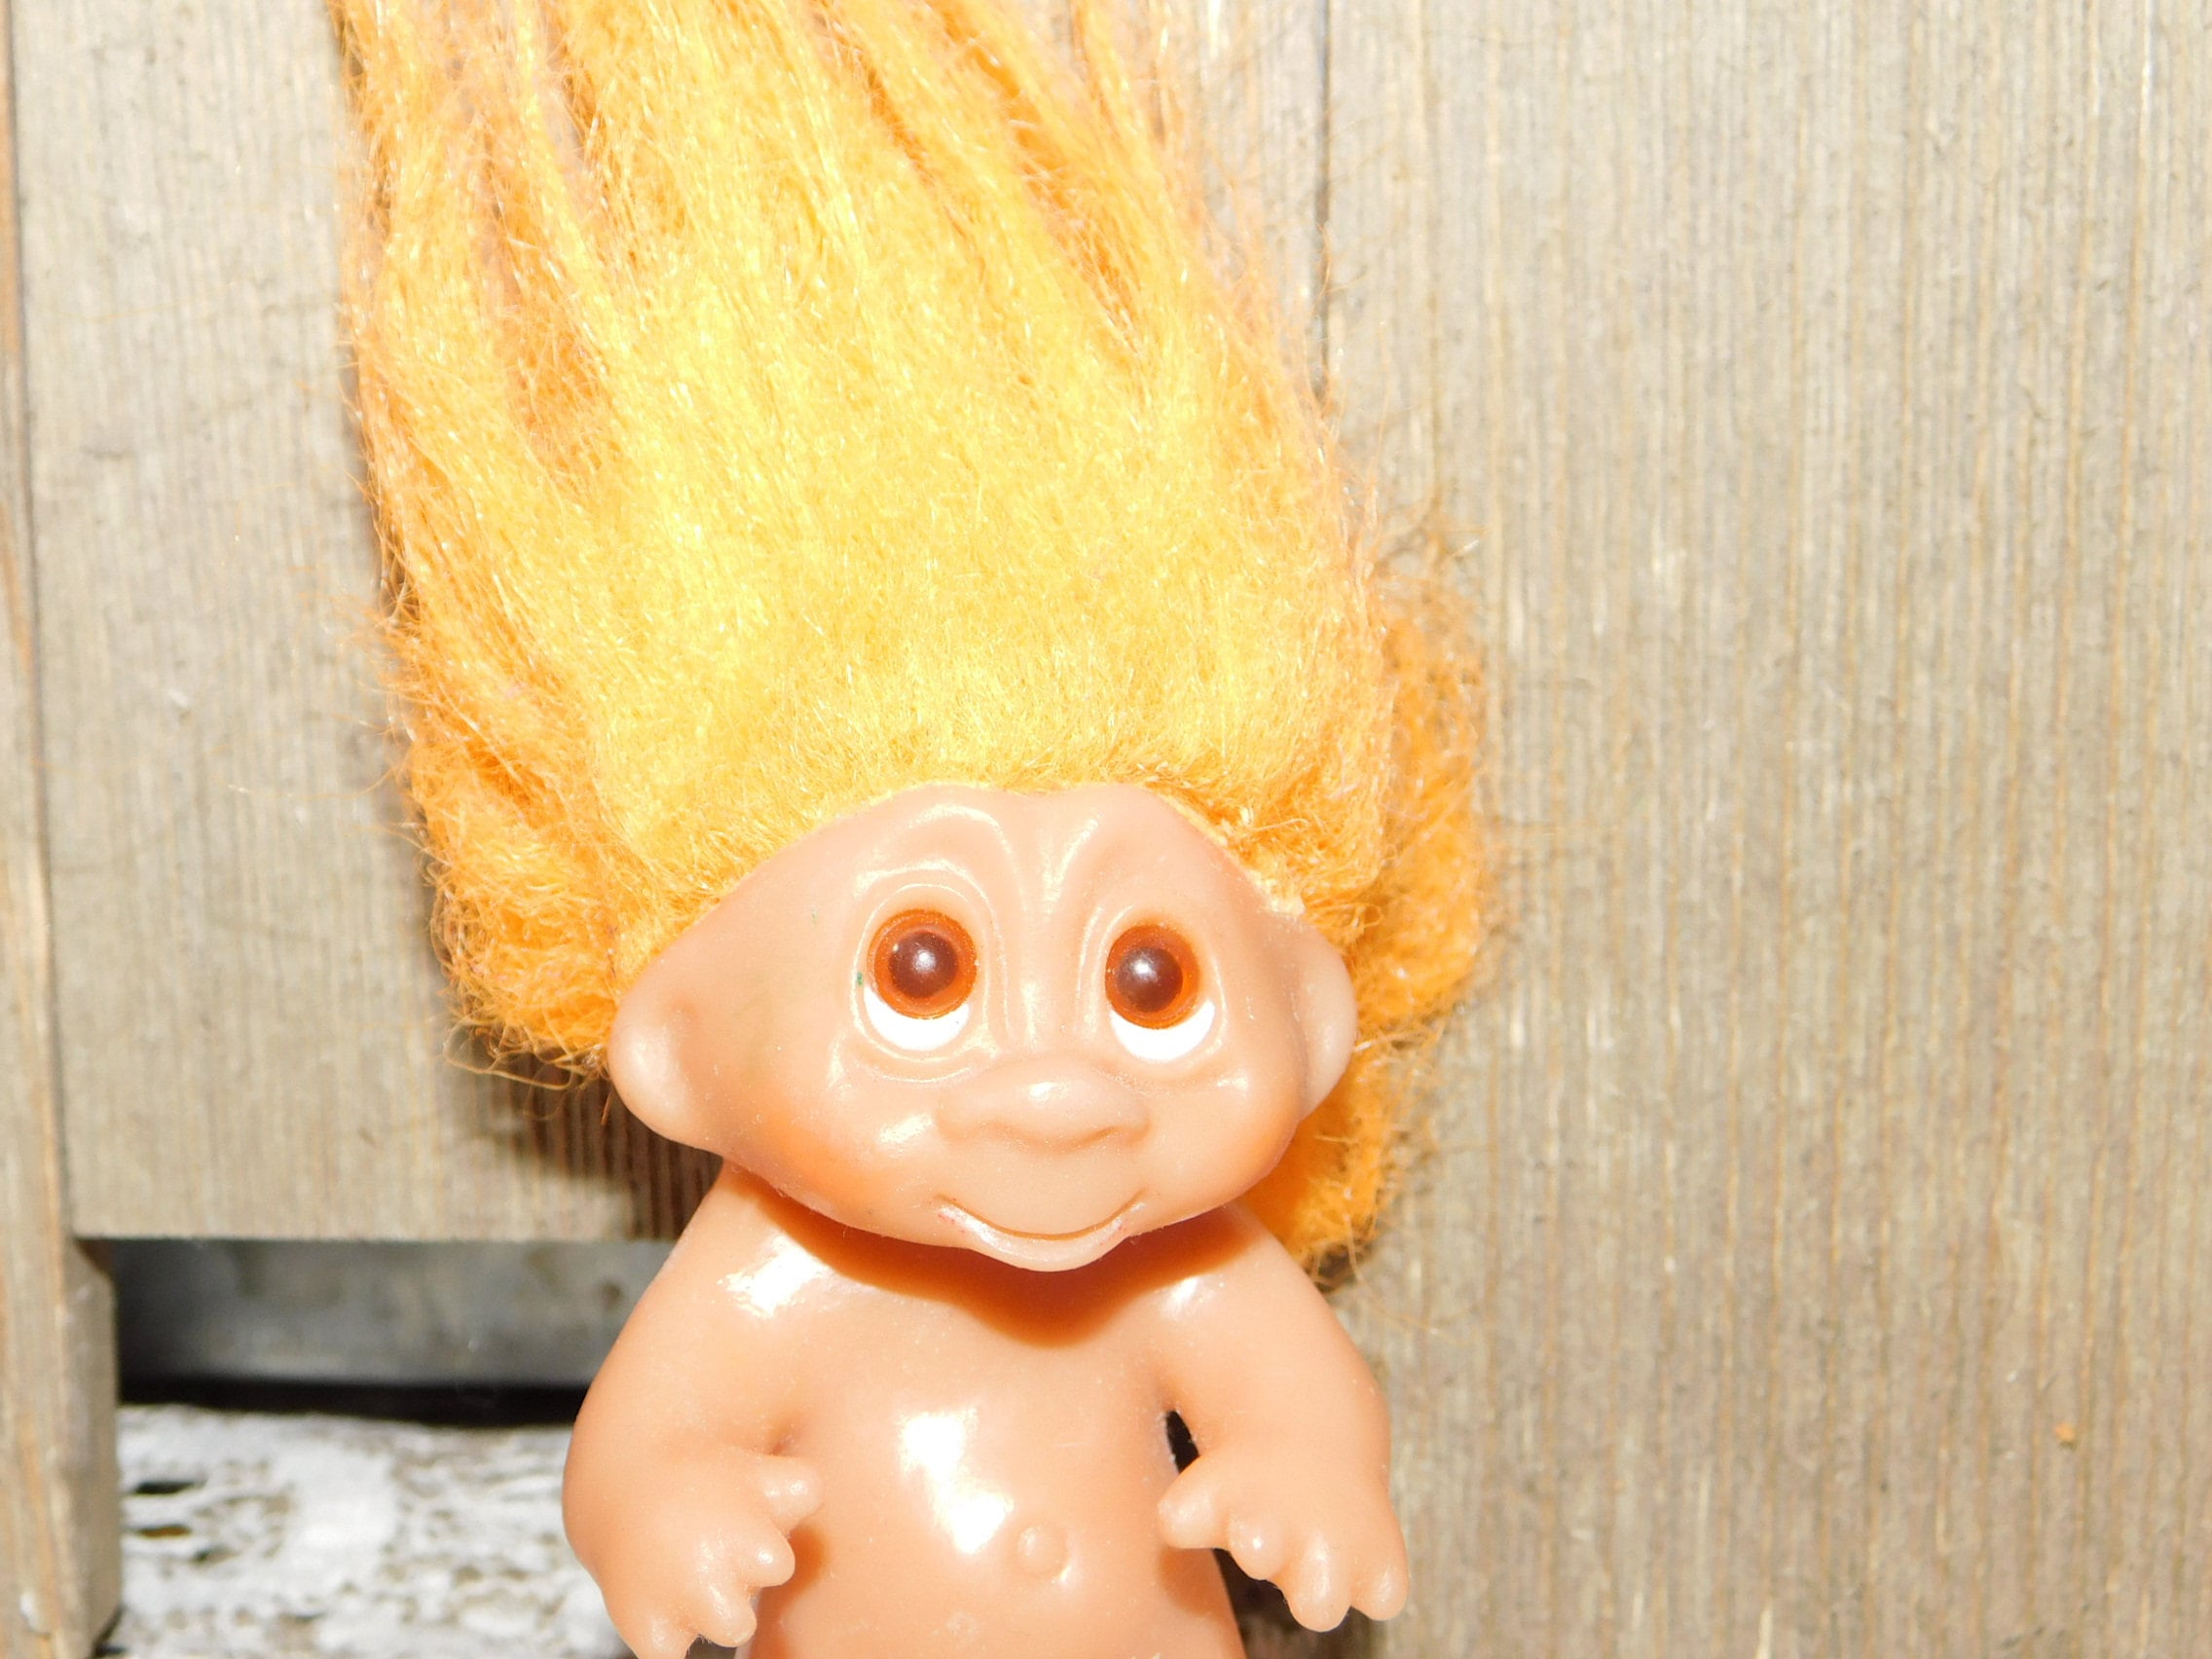 Orange Hair Troll Doll with Blue Eyes - wide 3